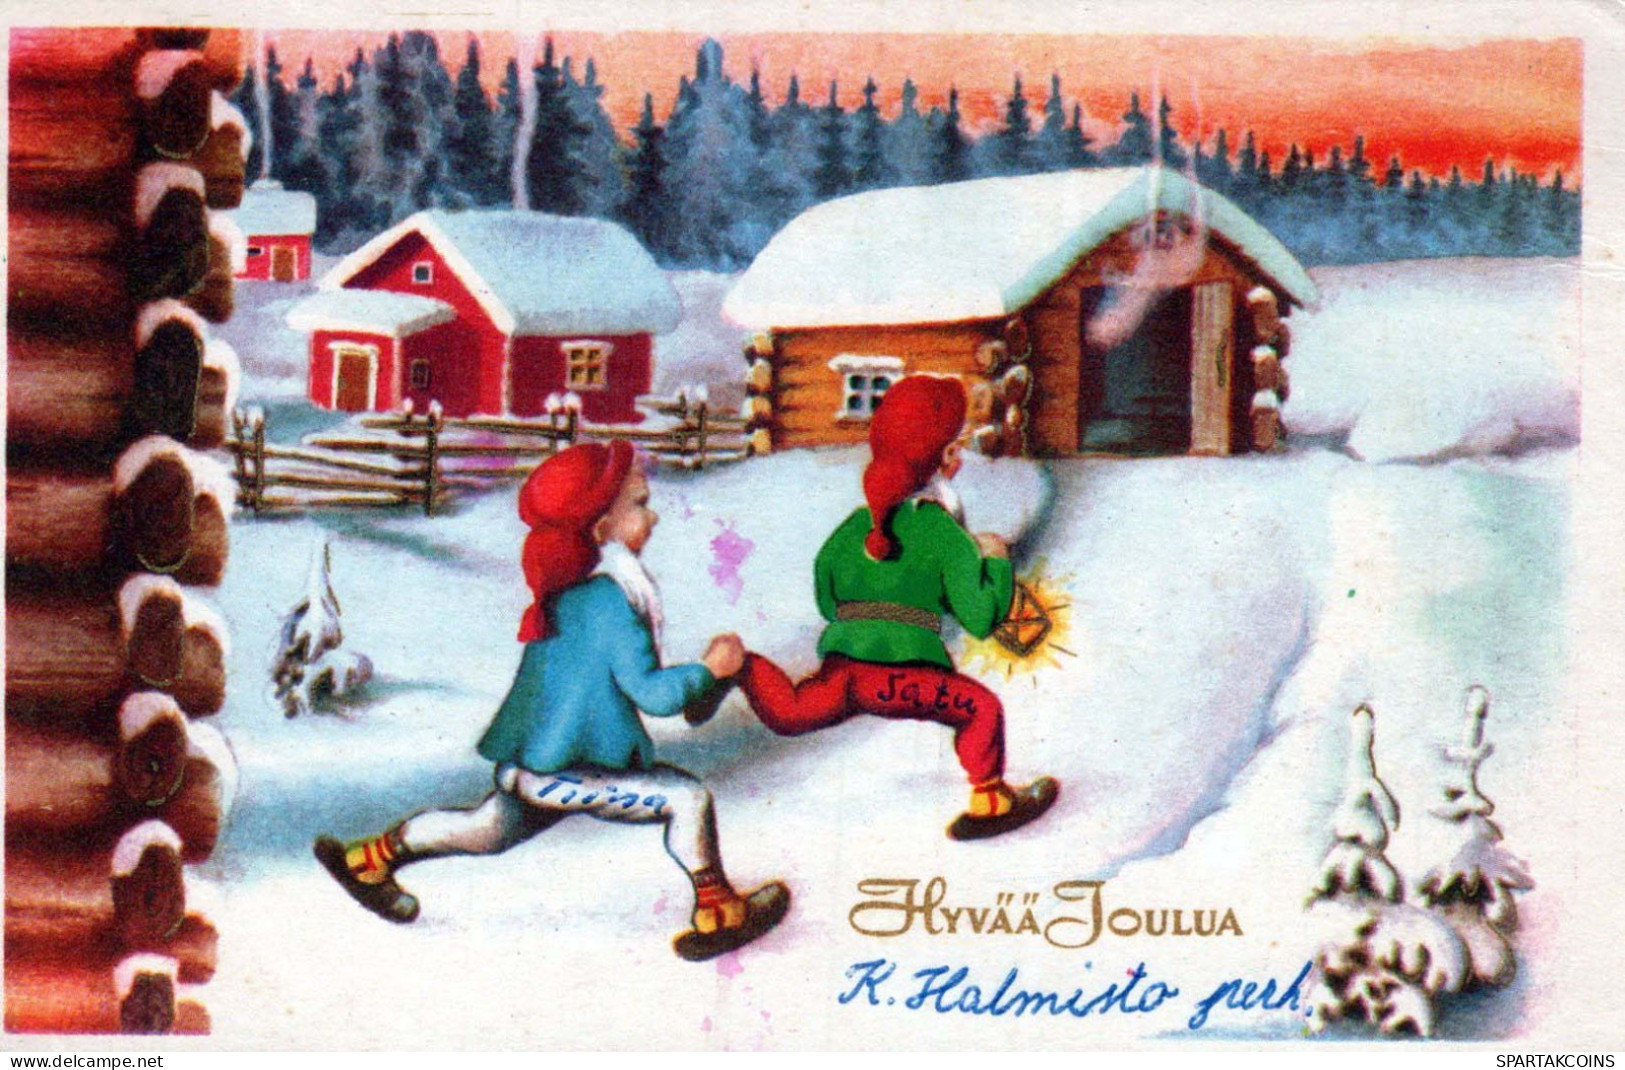 WEIHNACHTSMANN SANTA CLAUS Neujahr Weihnachten GNOME Vintage Ansichtskarte Postkarte CPSMPF #PKD994.A - Santa Claus